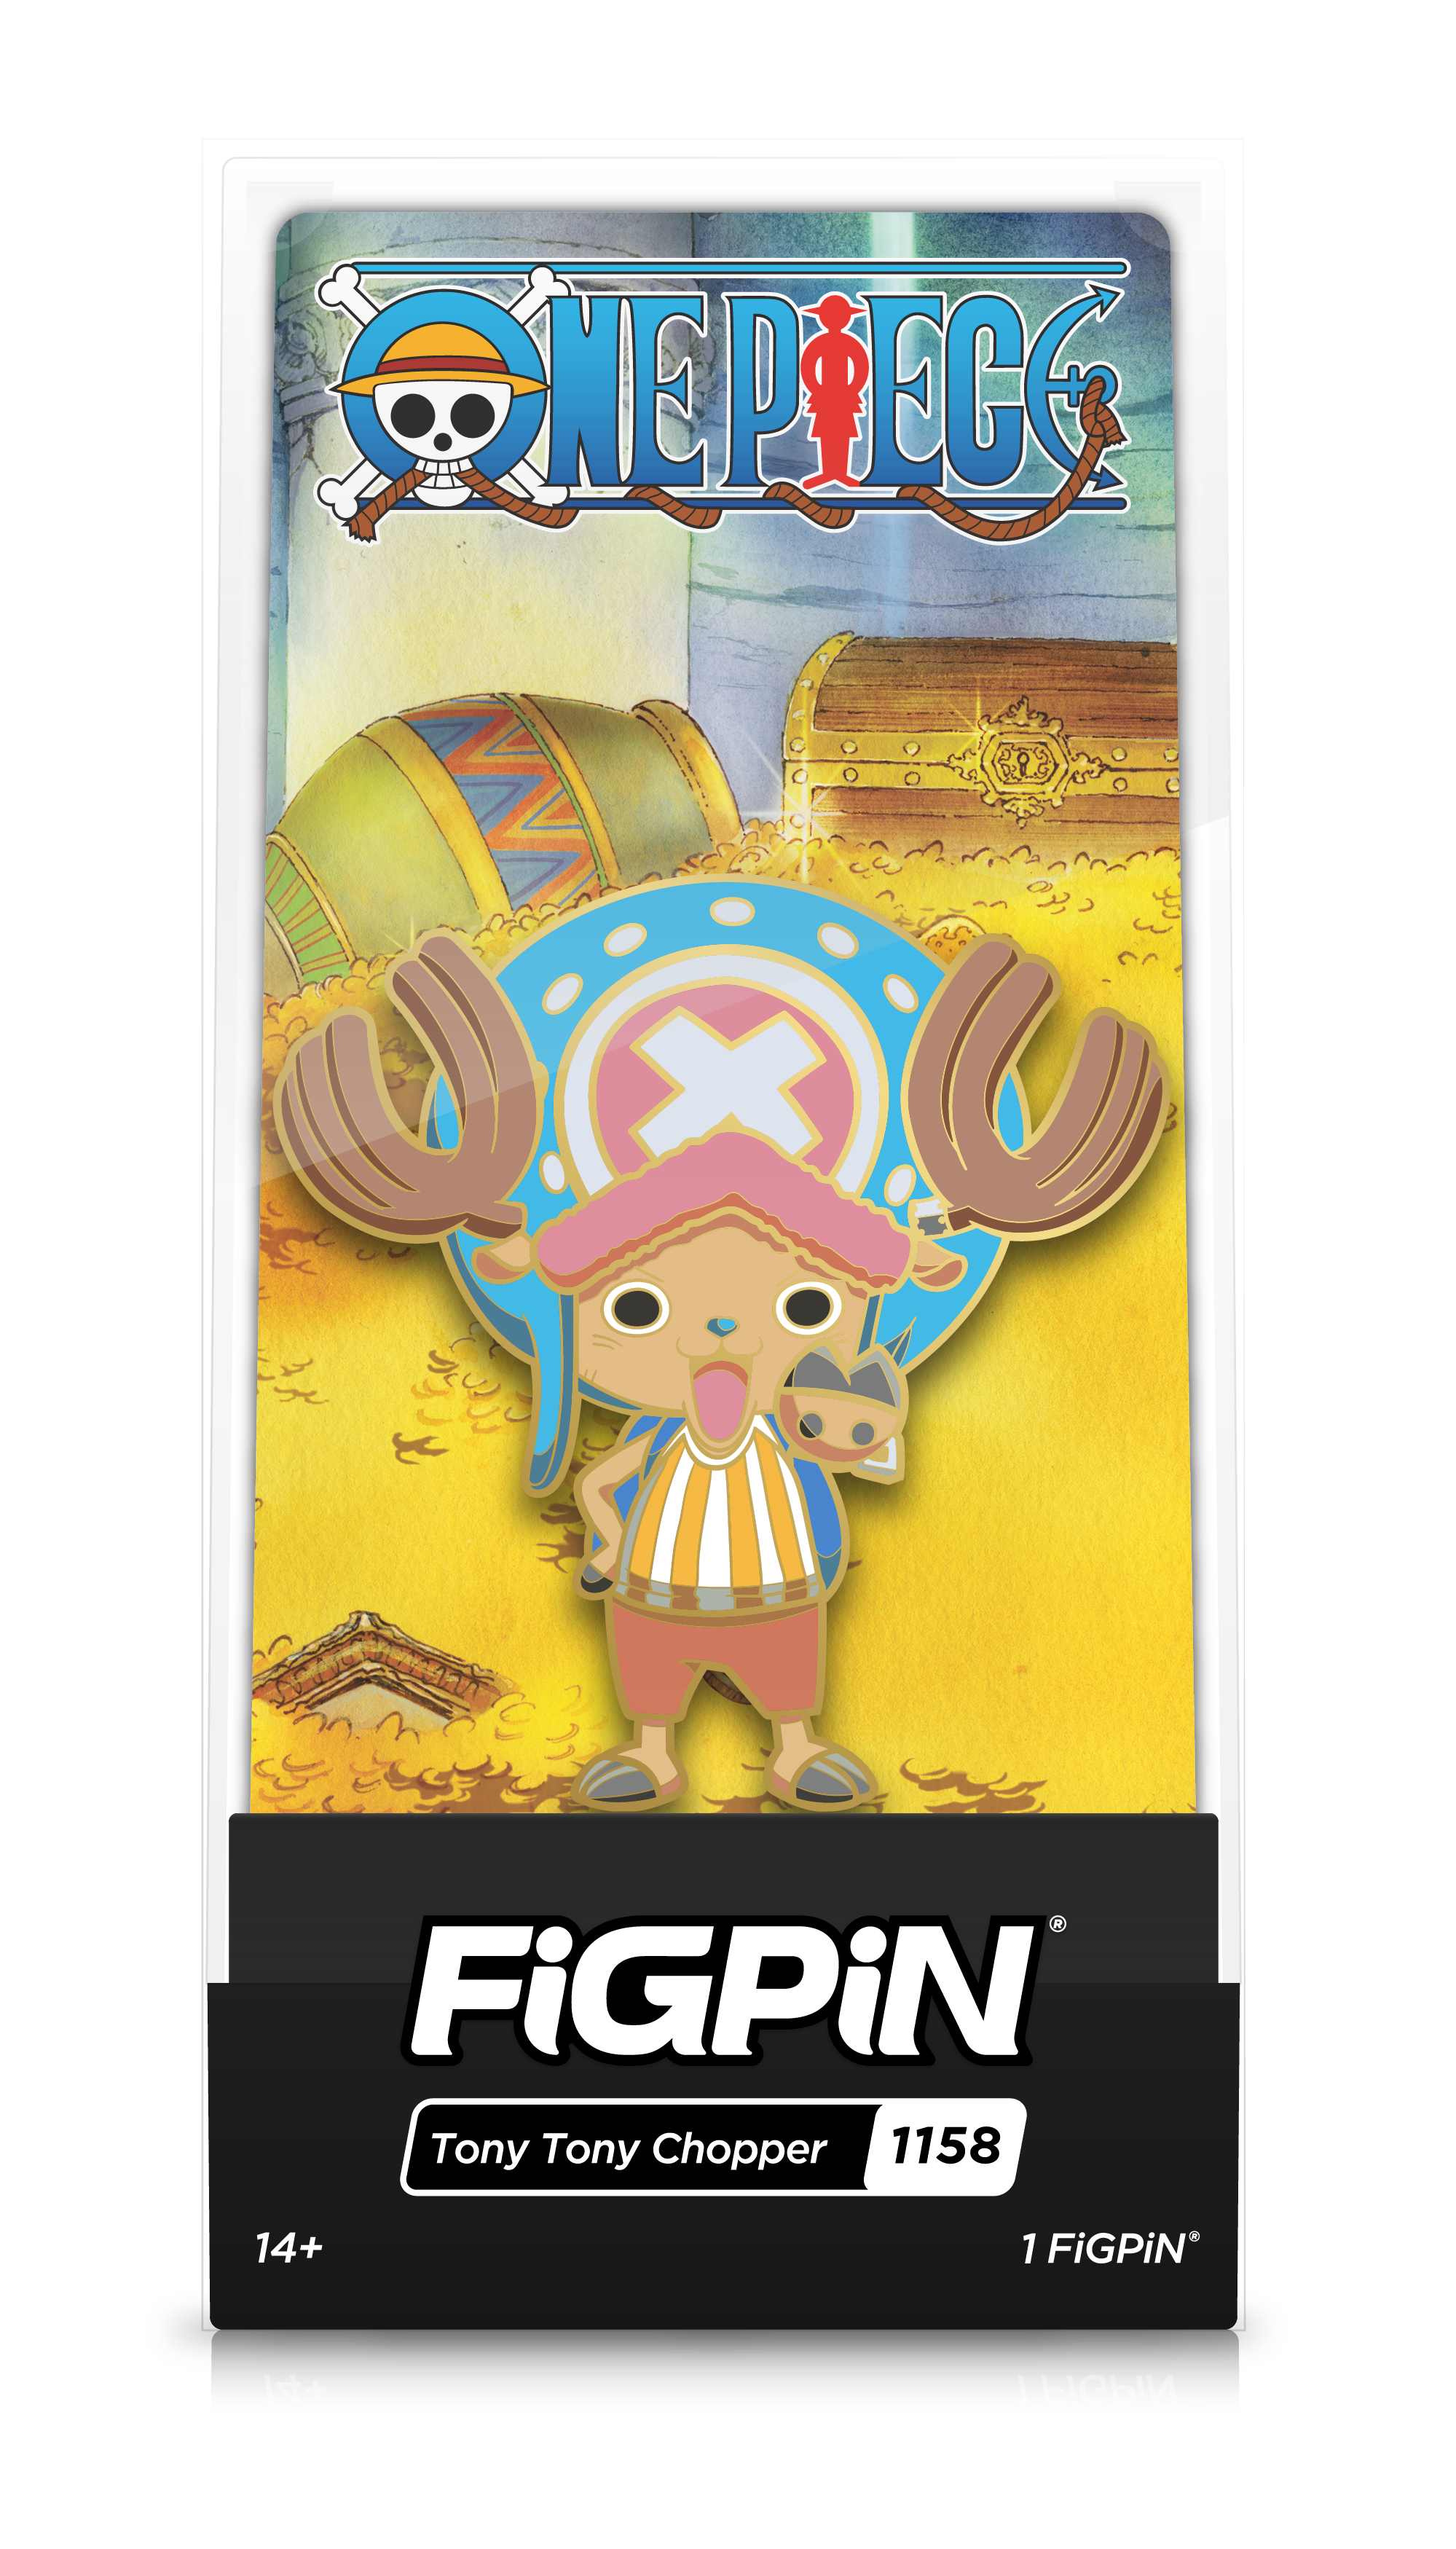 Front view of One Piece's Tony Tony Chopper enamel pin inside FiGPiN Display case reading “FiGPiN - Tony Tony Chopper (1158)”